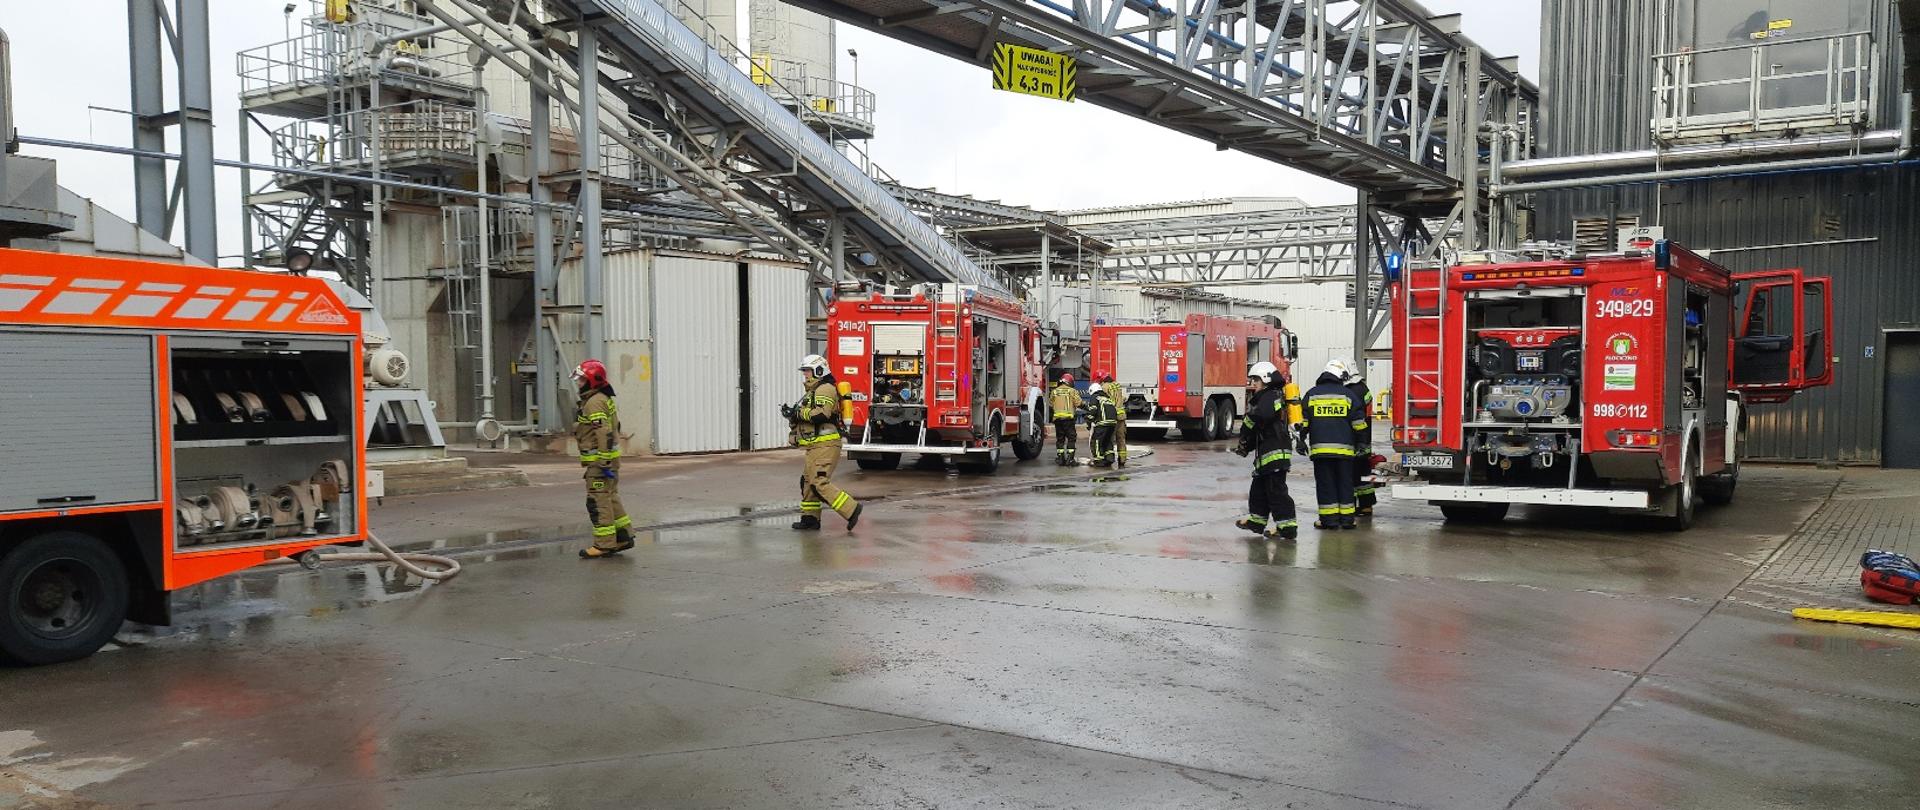 Na zdjęciu widać strażaków i samochody pożarnicze w tle budynki fabryki